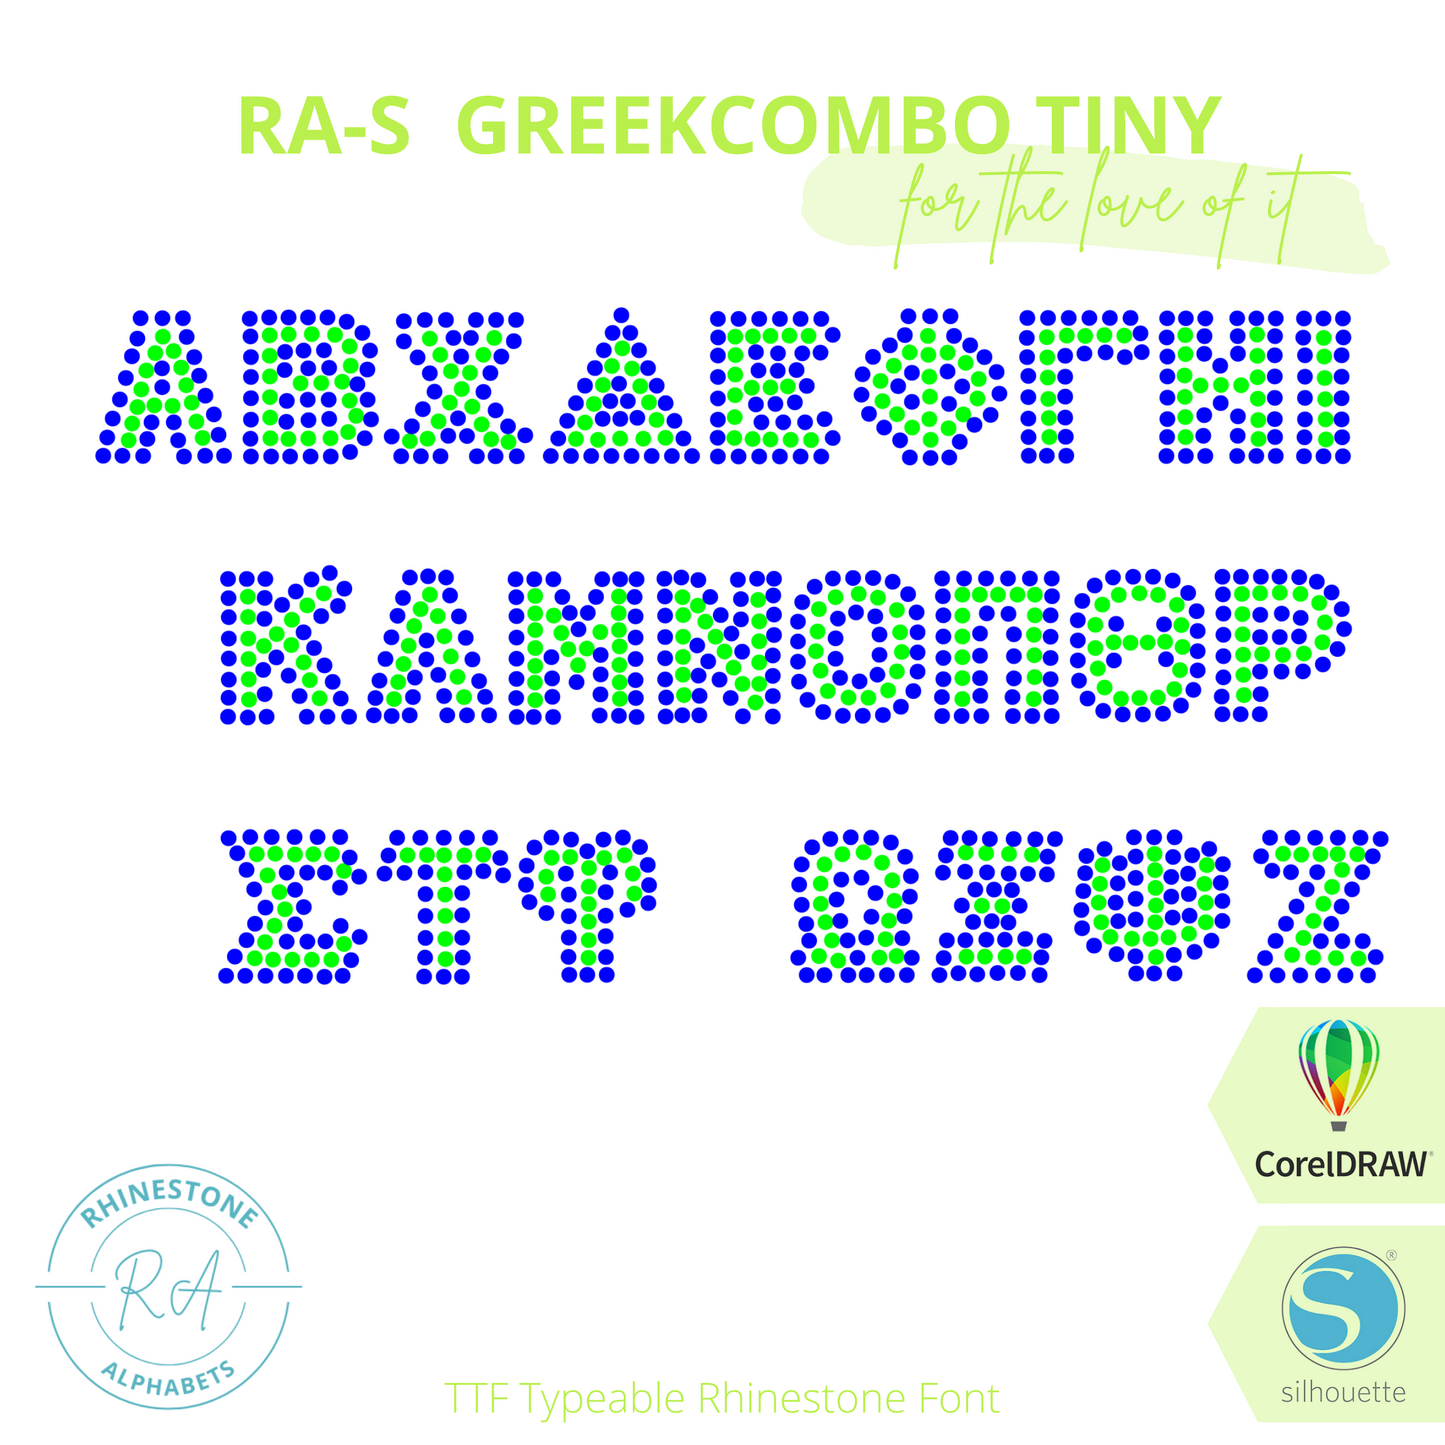 RA-S Greek Combo Tiny - RhinestoneAlphabets